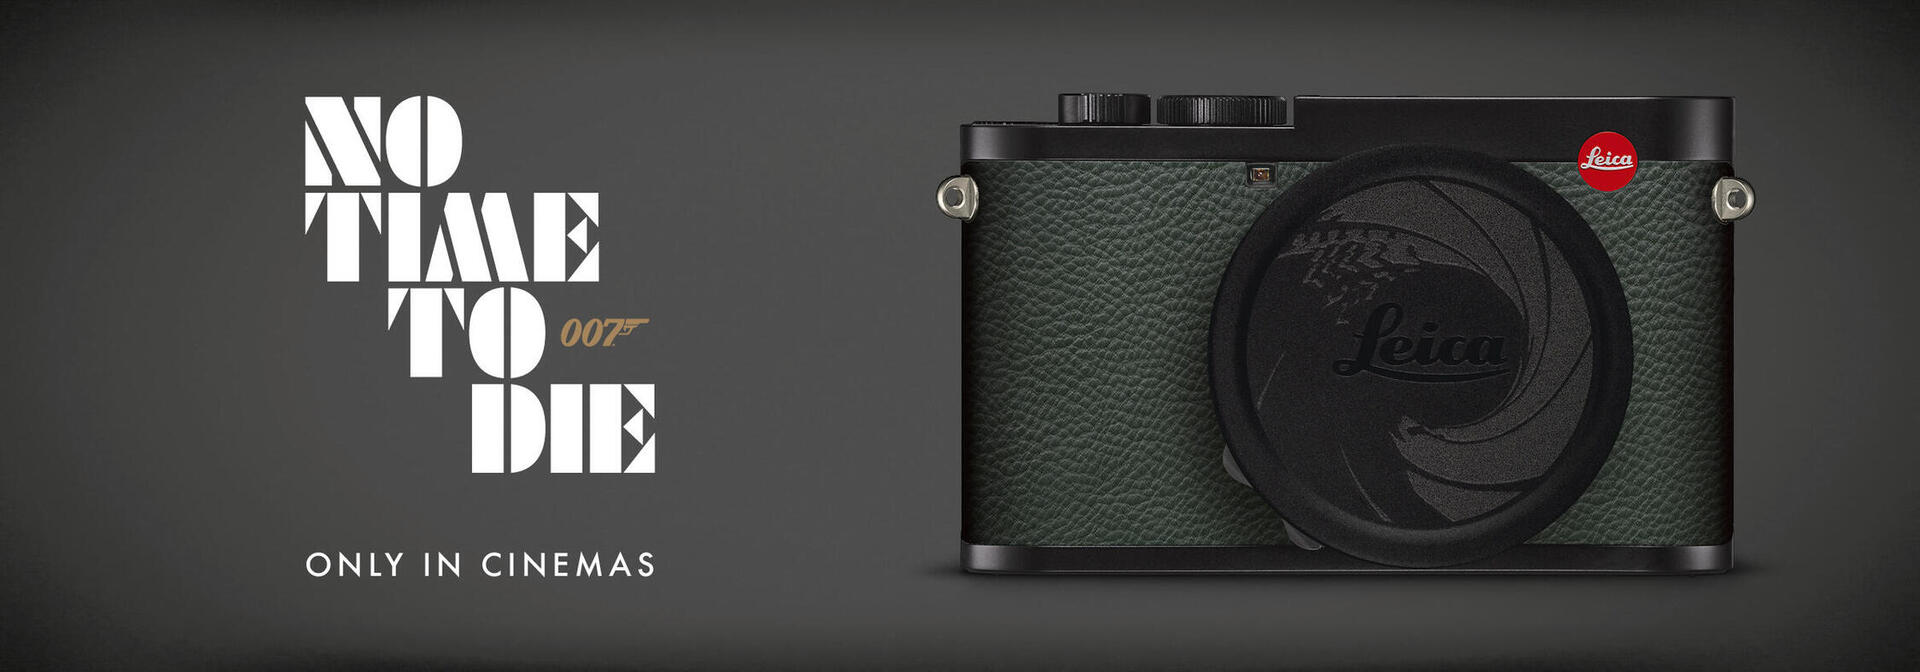 Leica Q2 007 Edition - Intro